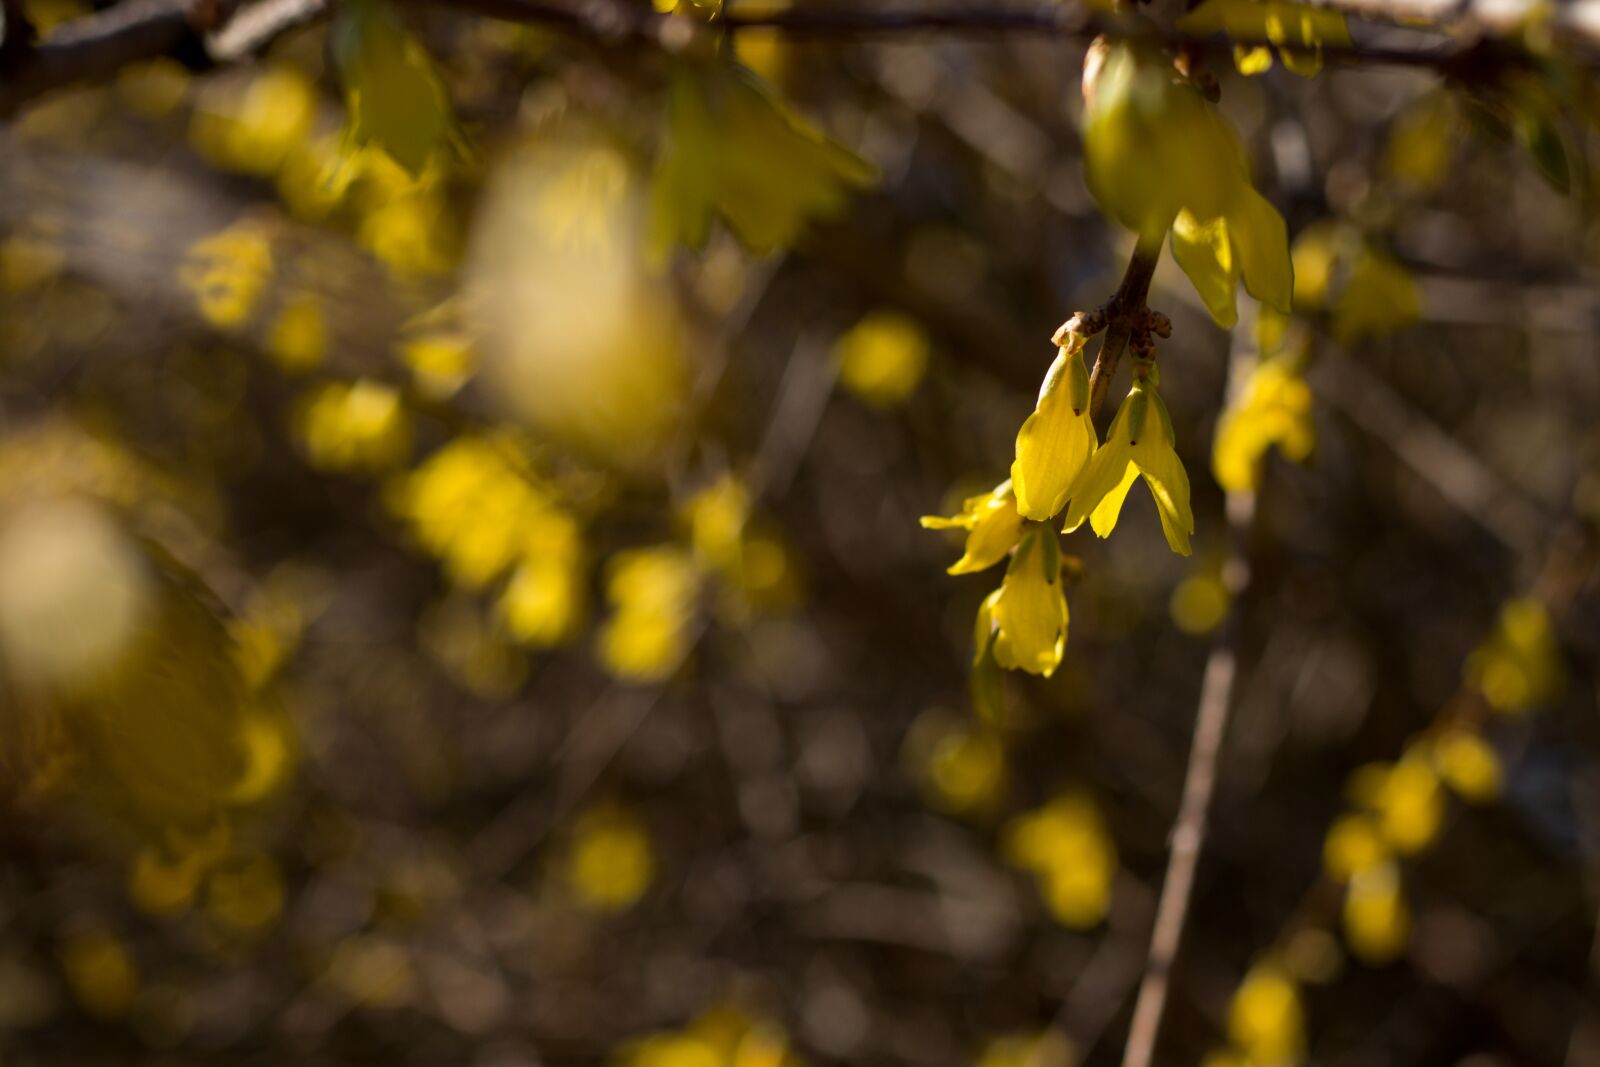 Canon EOS 800D (EOS Rebel T7i / EOS Kiss X9i) sample photo. Forsythia, spring, yellow photography